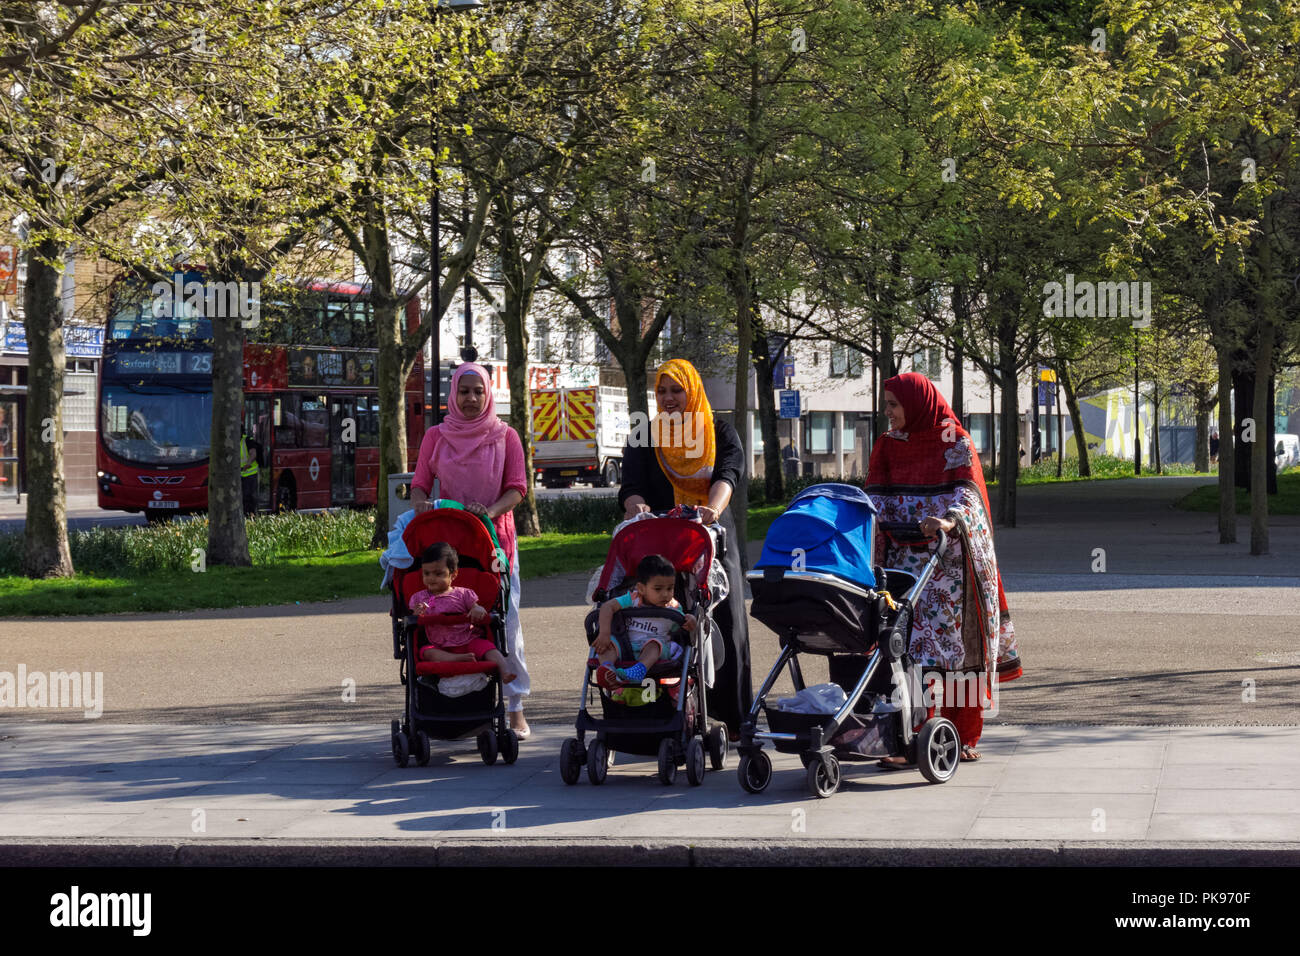 Les femmes de minorités ethniques avec les enfants autour de Stepney Green, Londres Angleterre Royaume-Uni UK Banque D'Images